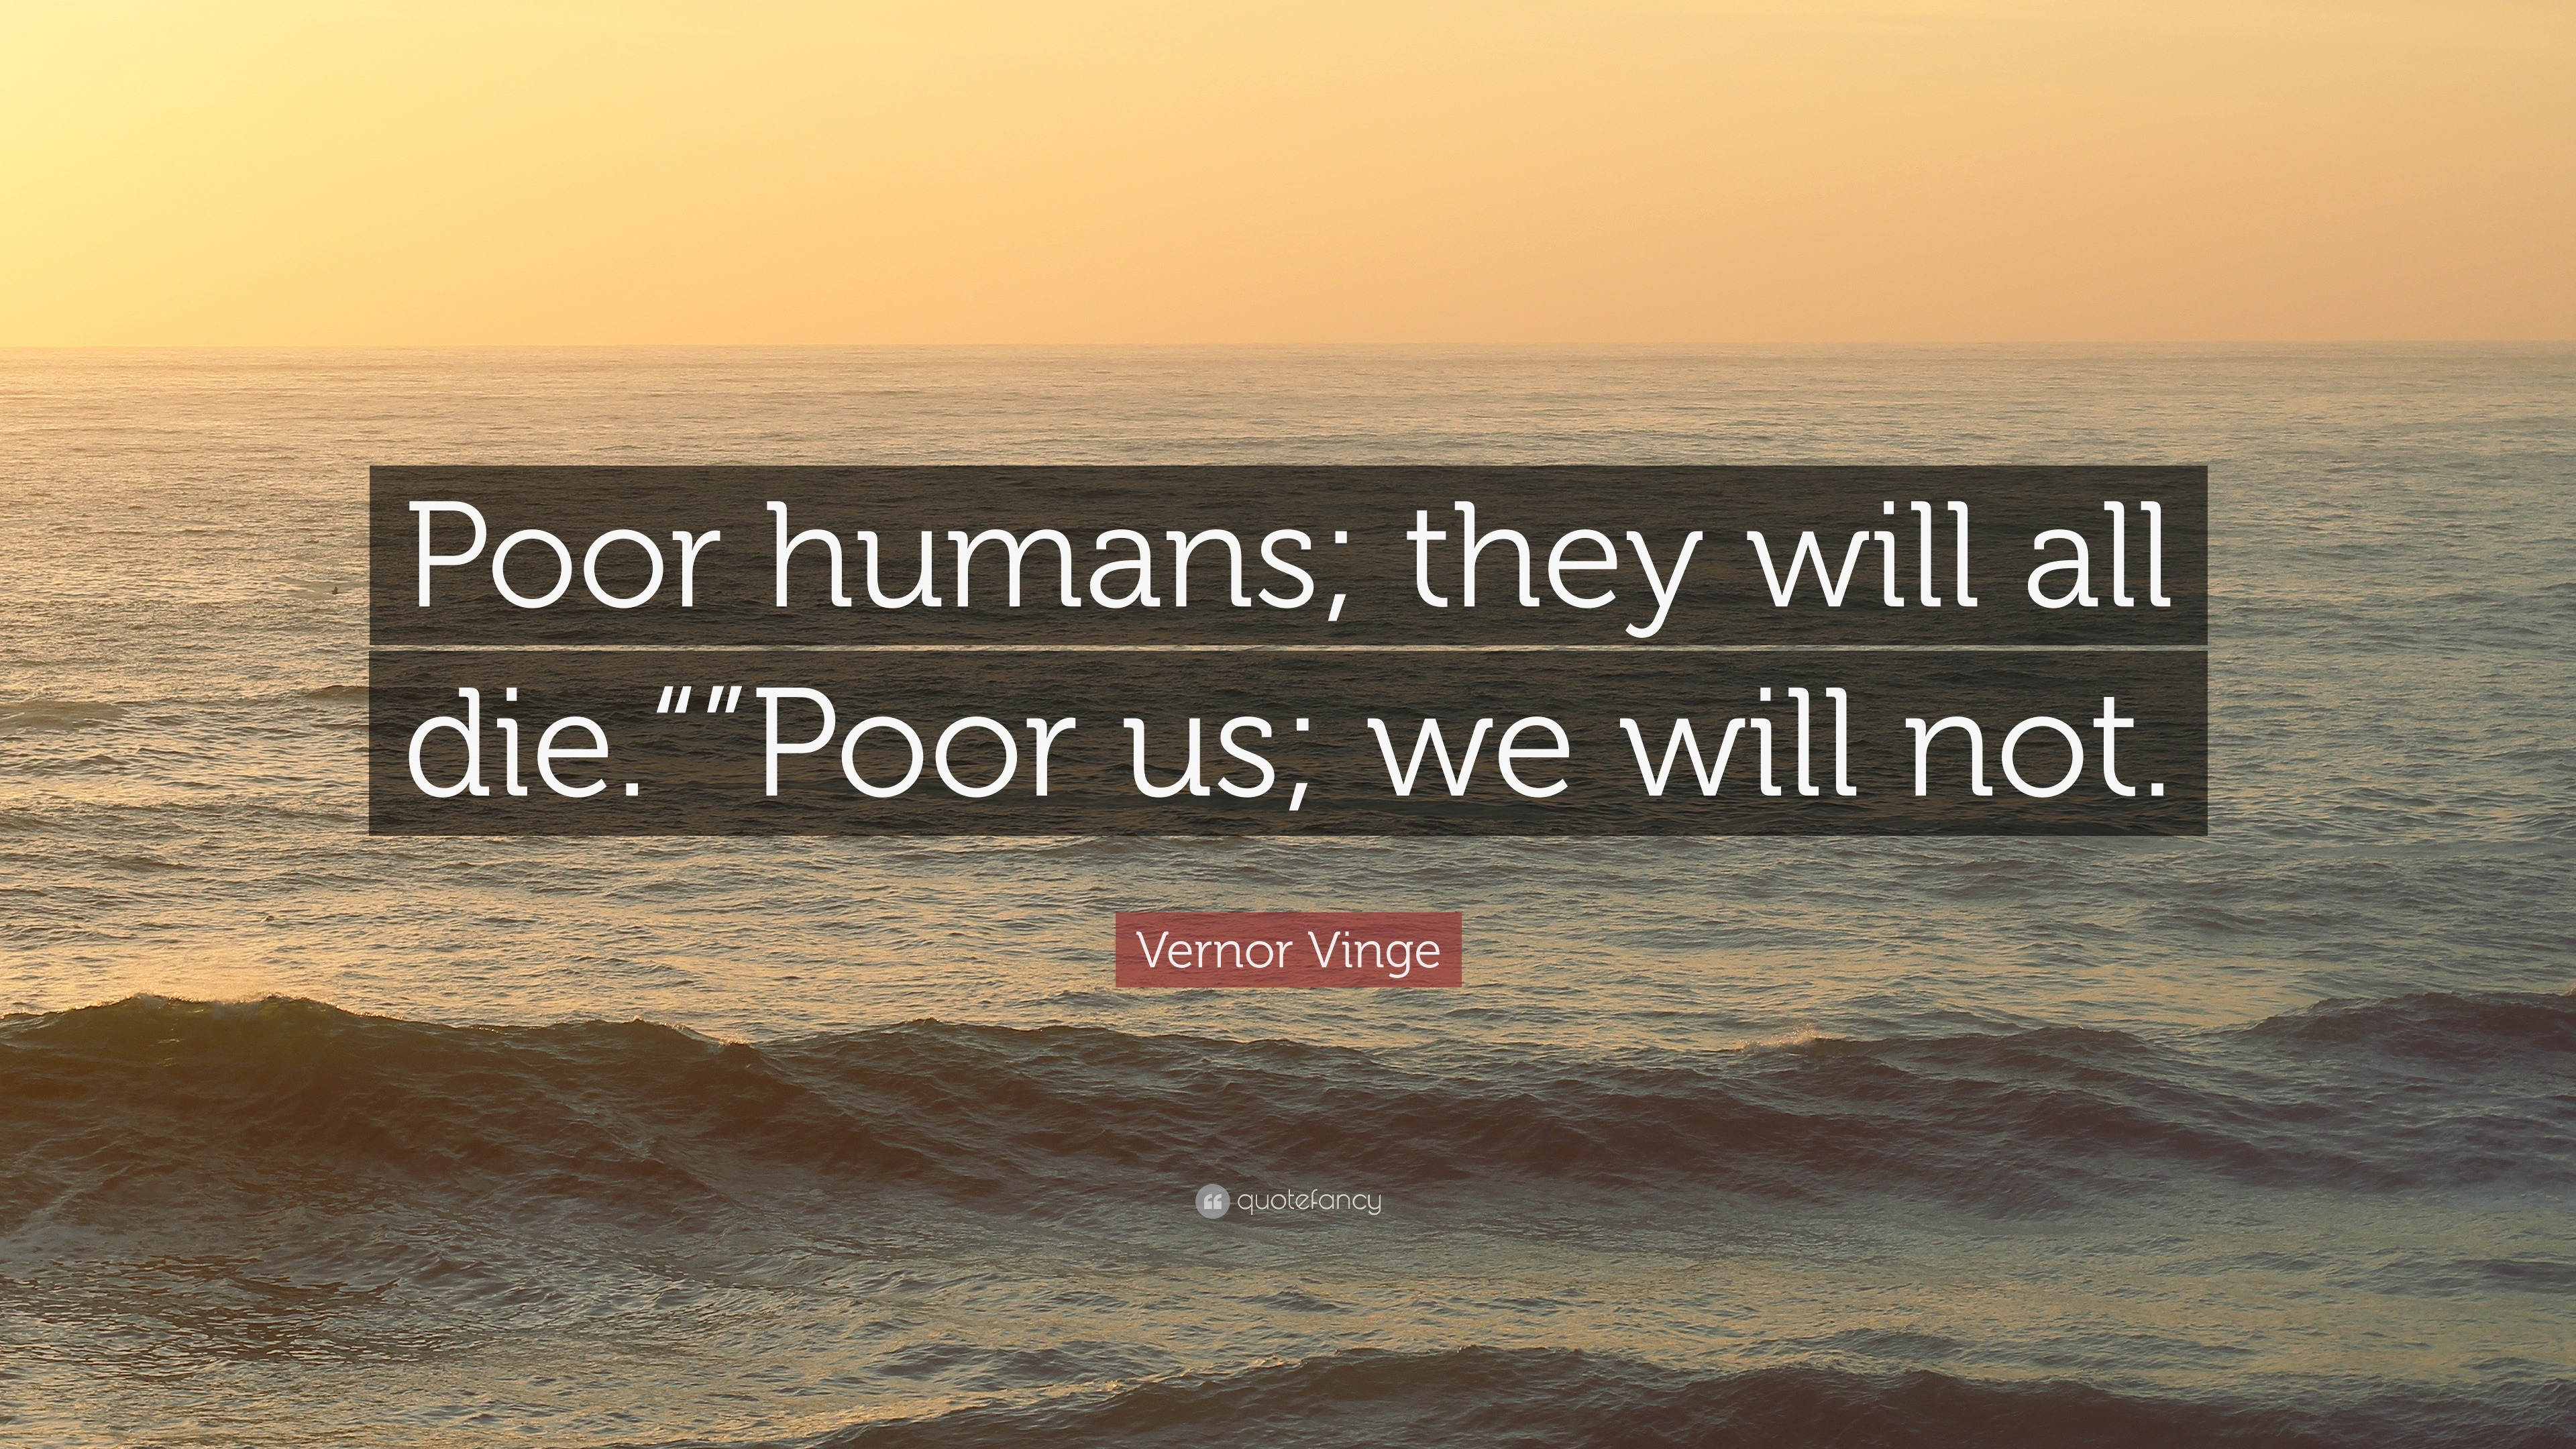 https://quotefancy.com/media/wallpaper/3840x2160/5868483-Vernor-Vinge-Quote-Poor-humans-they-will-all-die-Poor-us-we-will.jpg